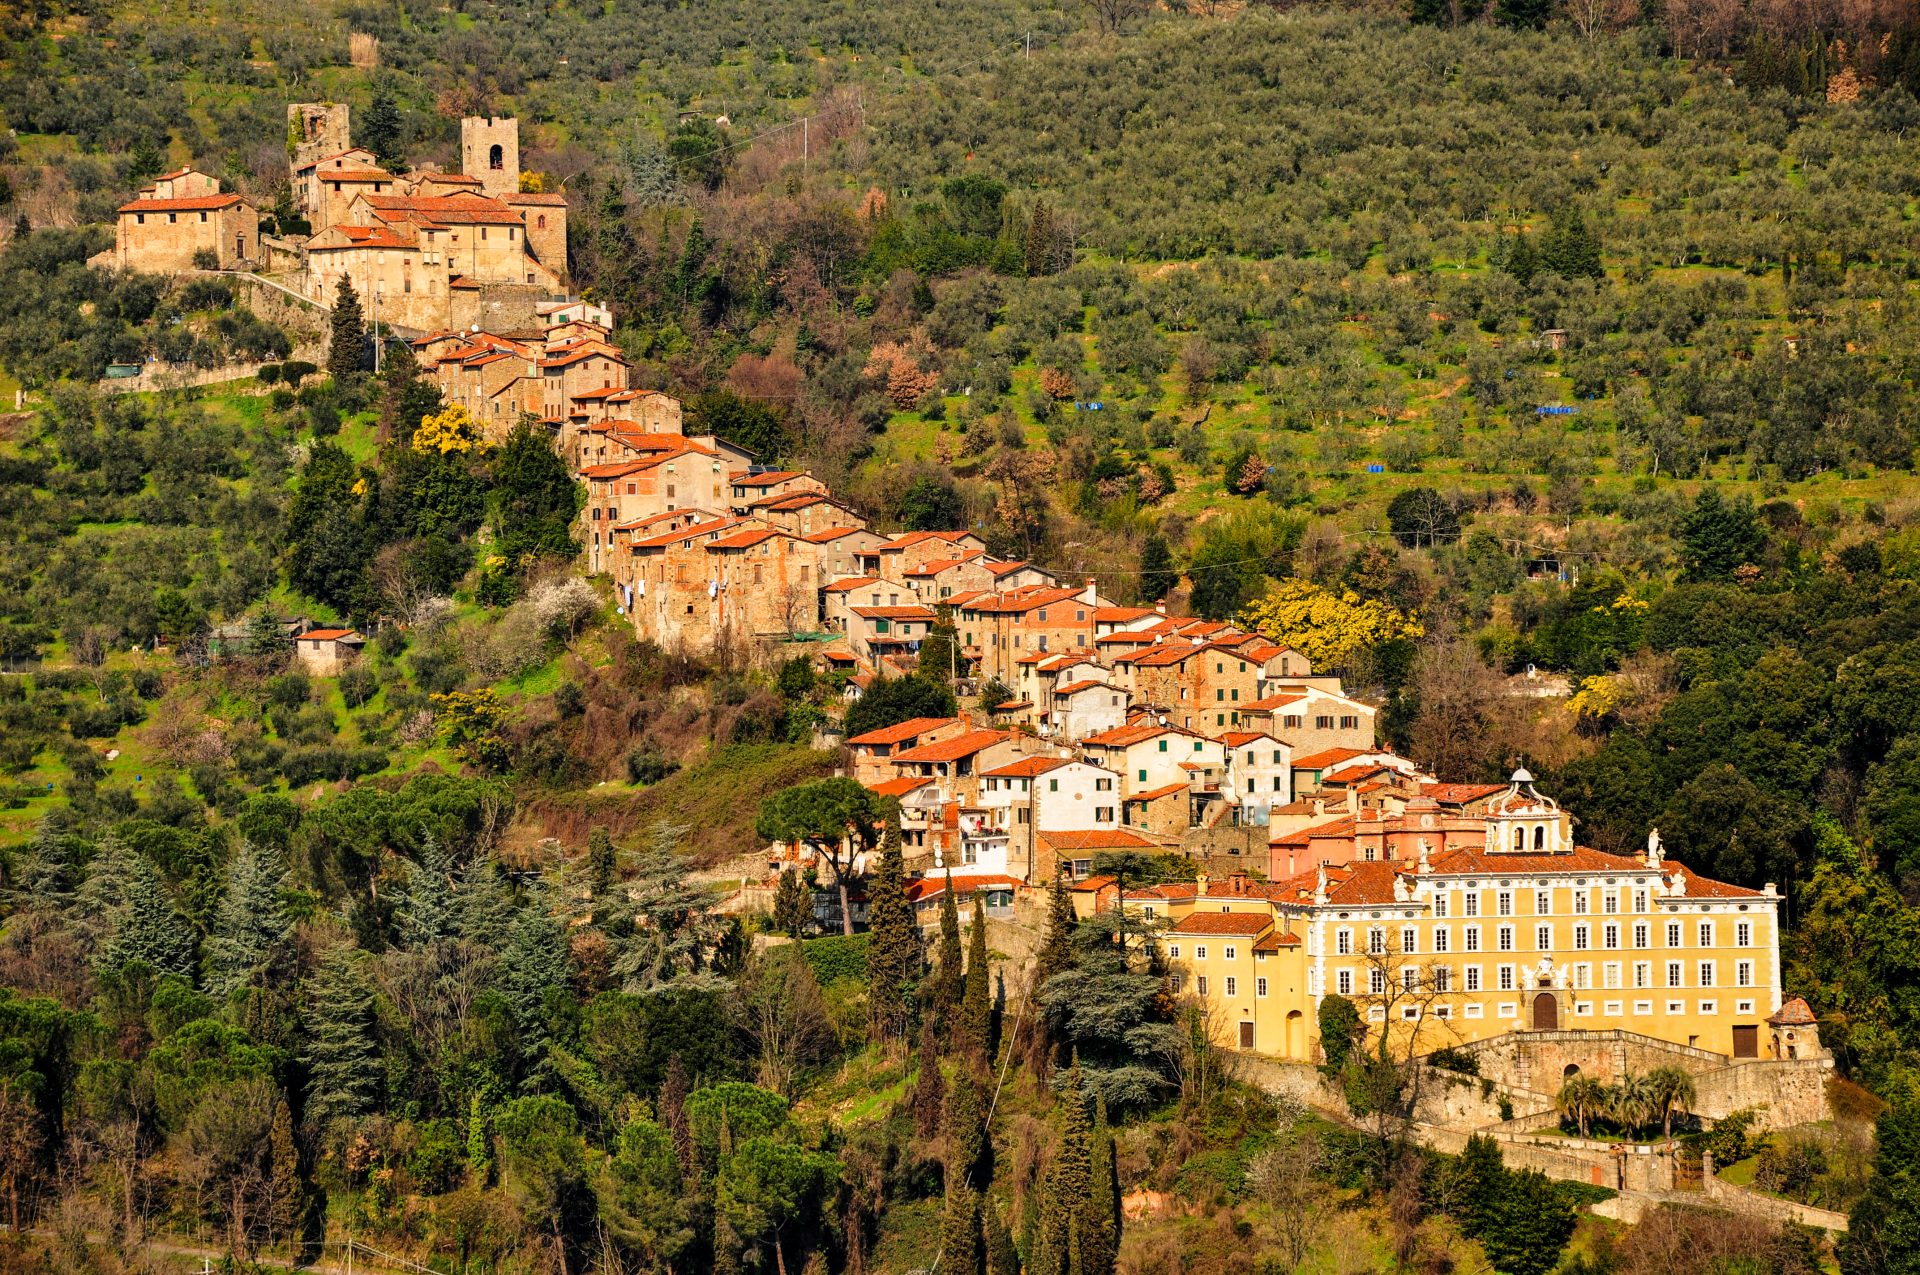 Una veduta aerea di Collodi, frazione di Pescia. In diagonale, il centro abitato, che si sviluppa in salita. Ai lati, bosco